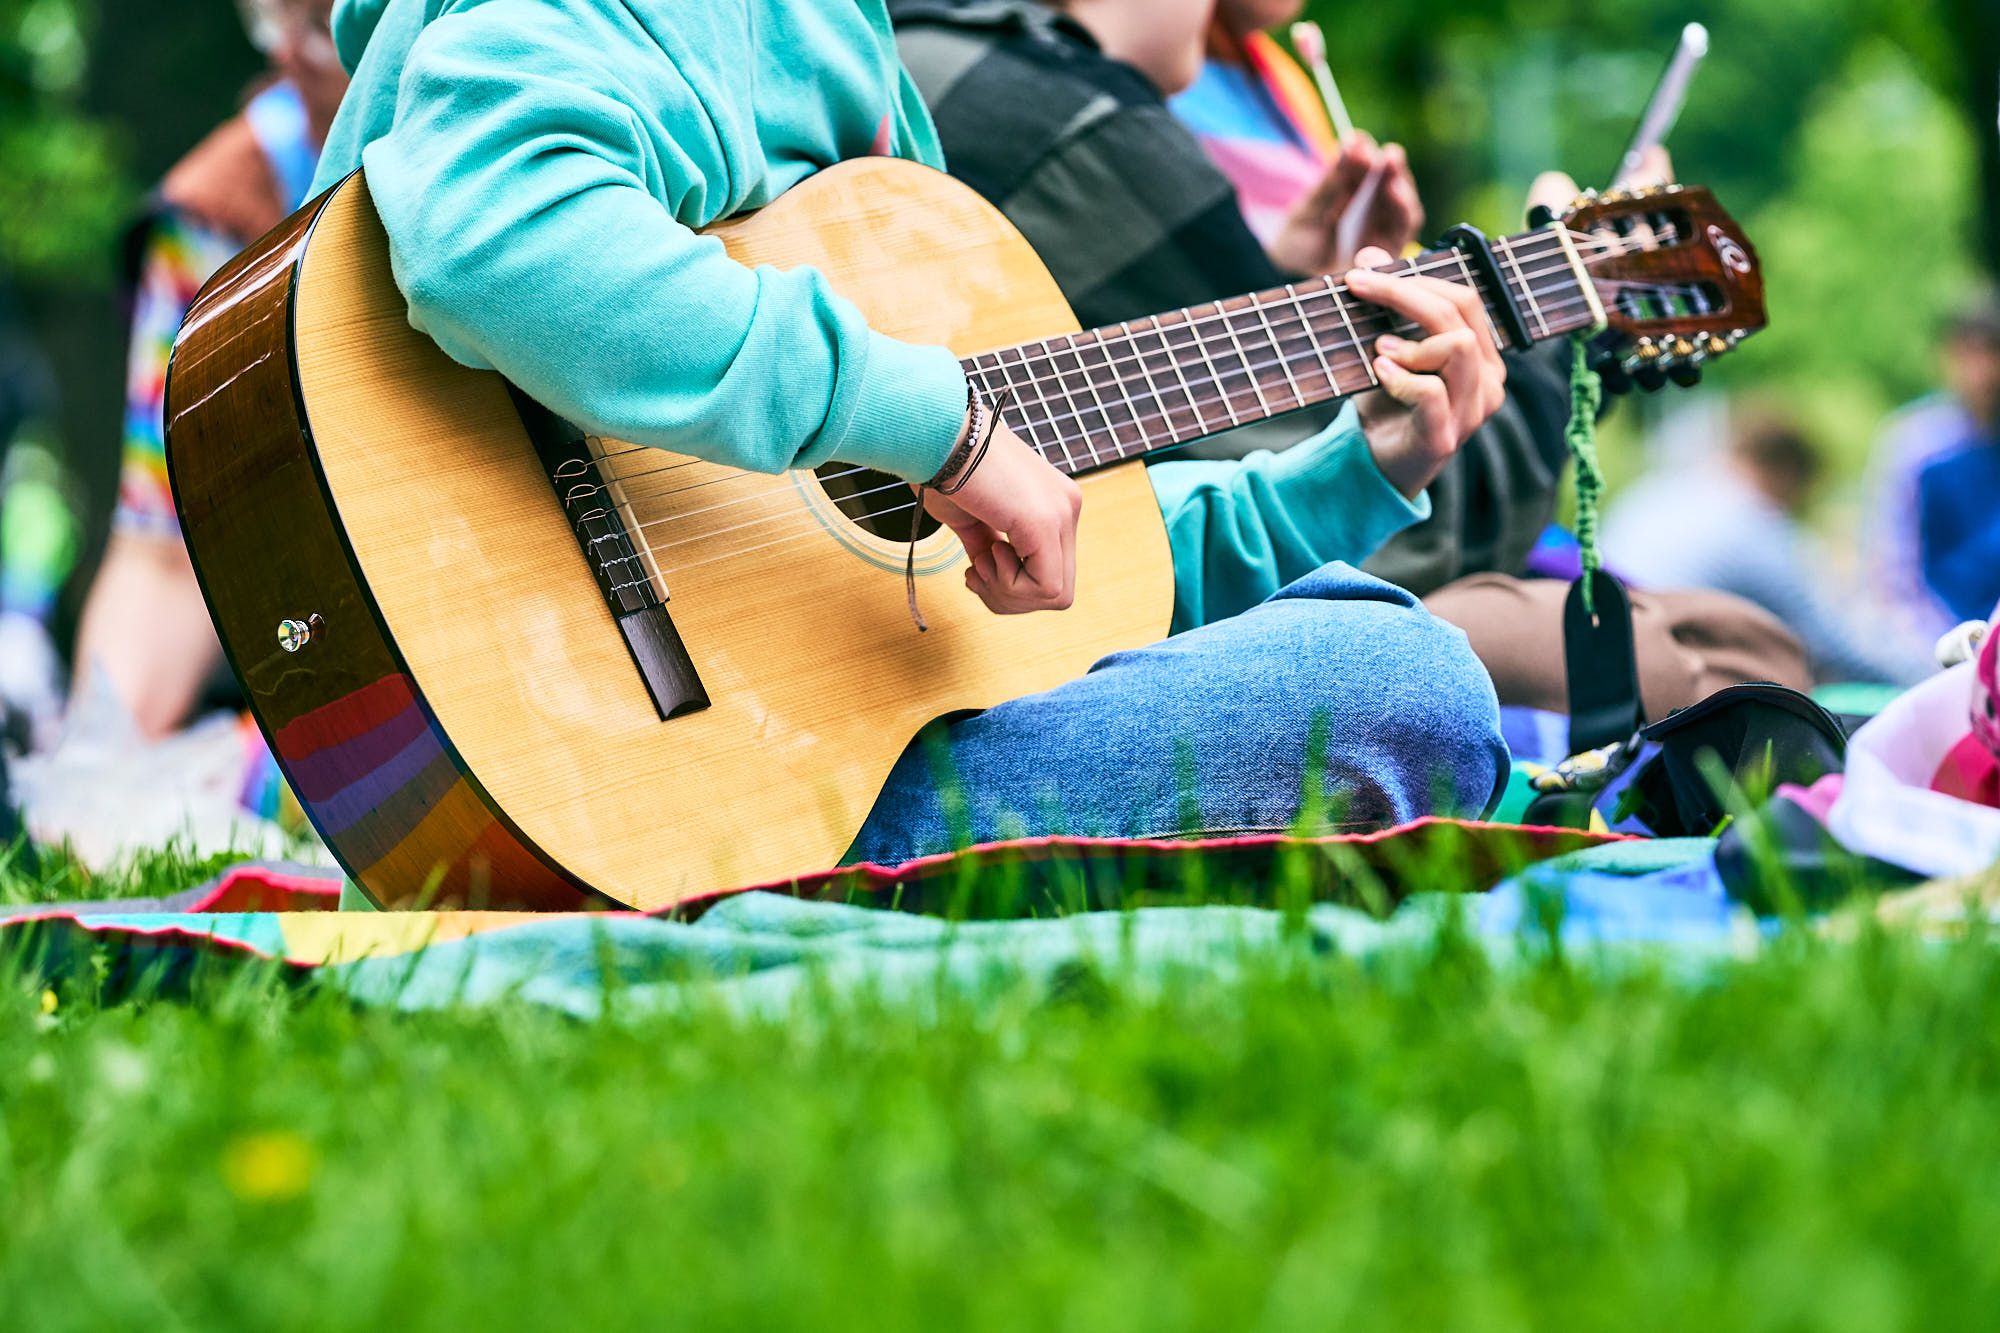 Lähikuva henkilöstä soittamassa kitaraa nurmikolla.